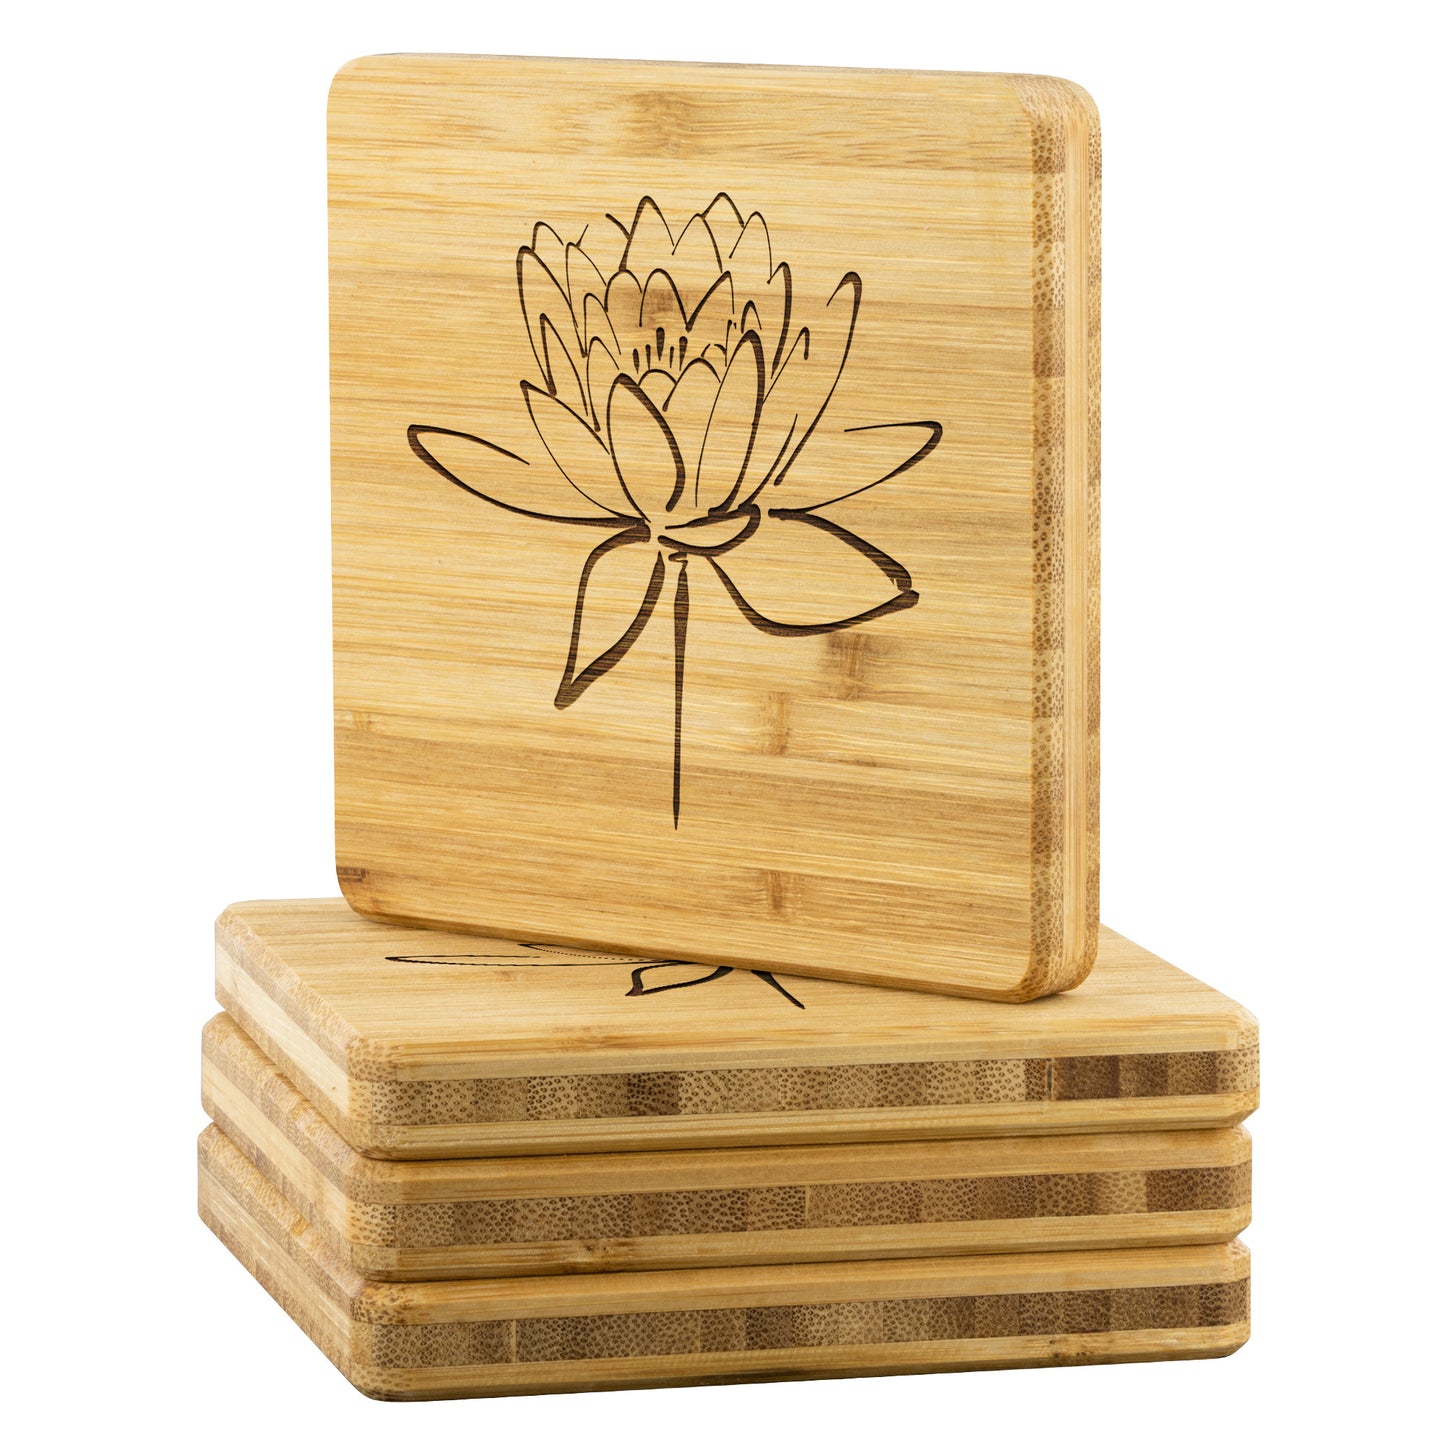 Lotus Flower Bamboo Coaster Set